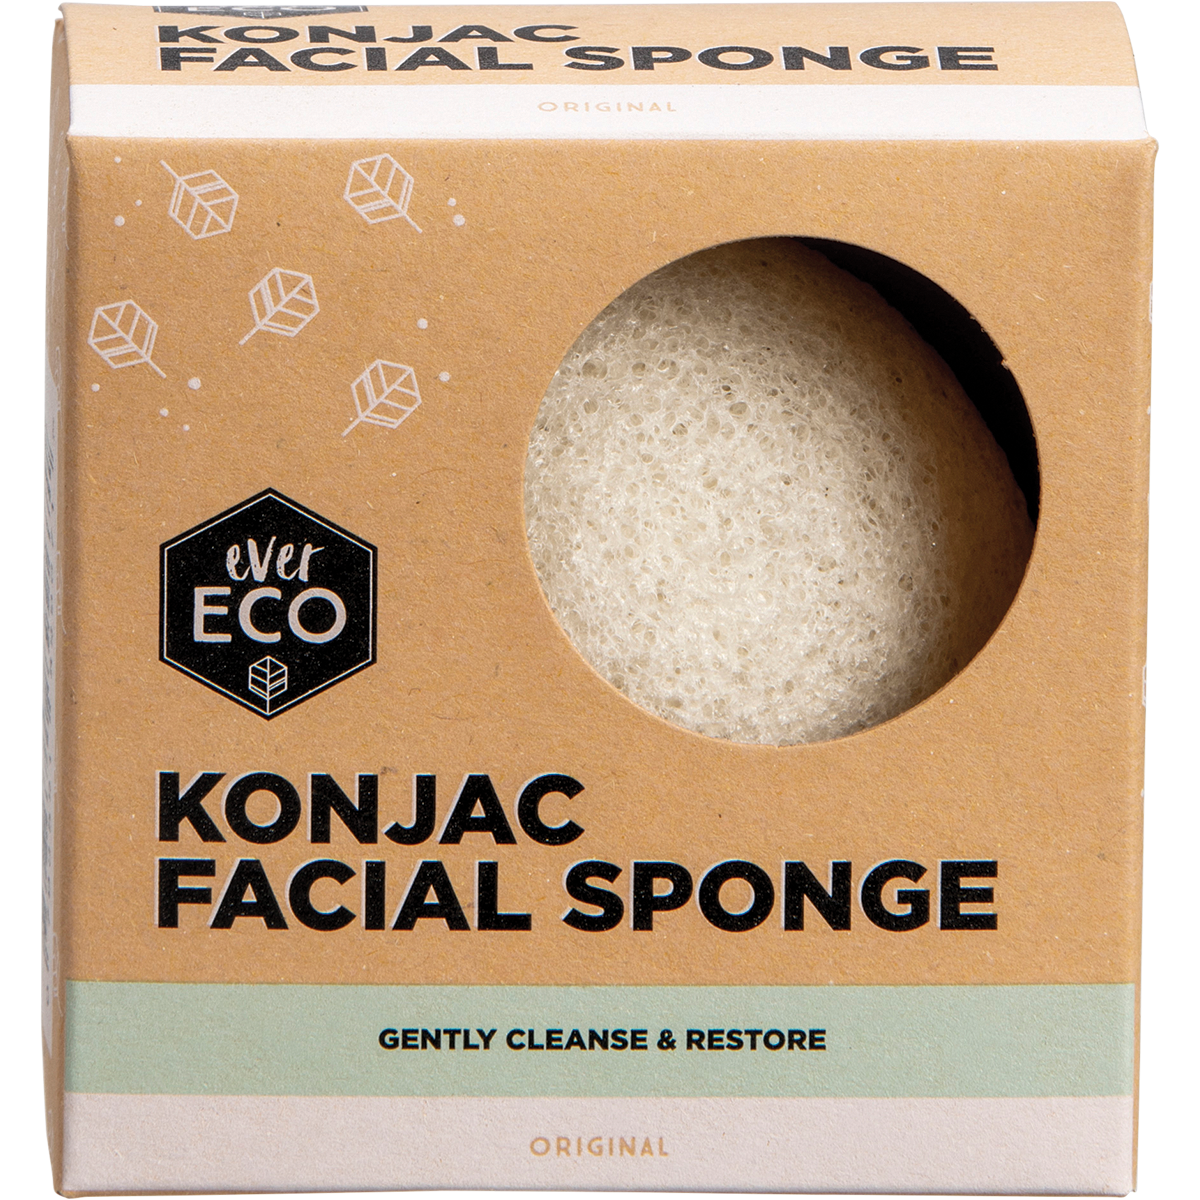 Konjac Facial Sponge by Ever Eco - Original